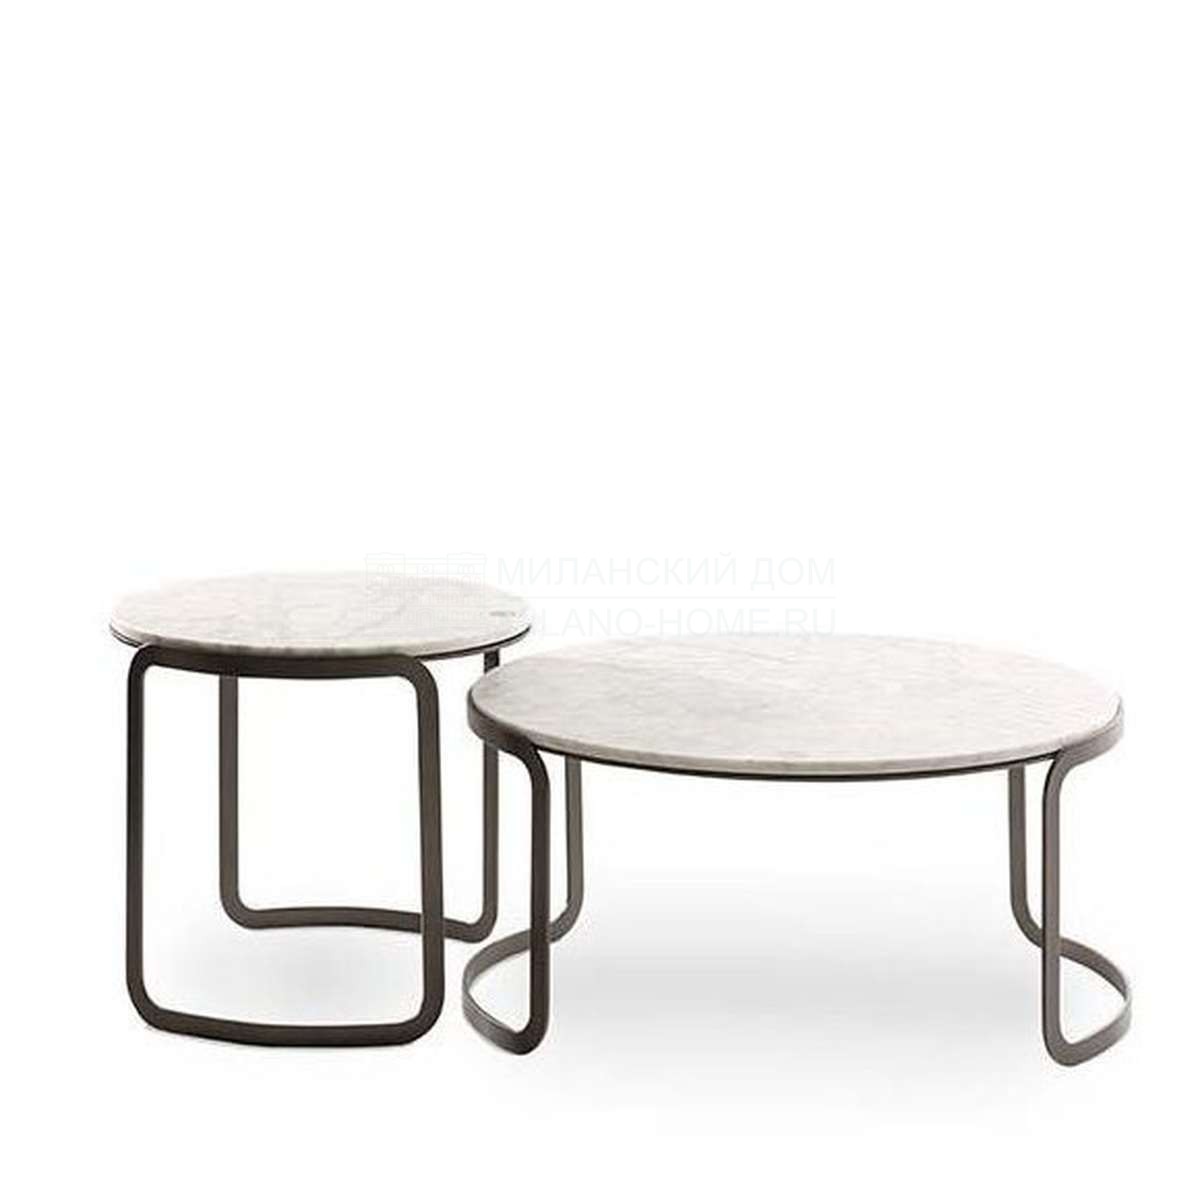 Кофейный столик Gala coffee table outdoor из Италии фабрики FENDI Casa